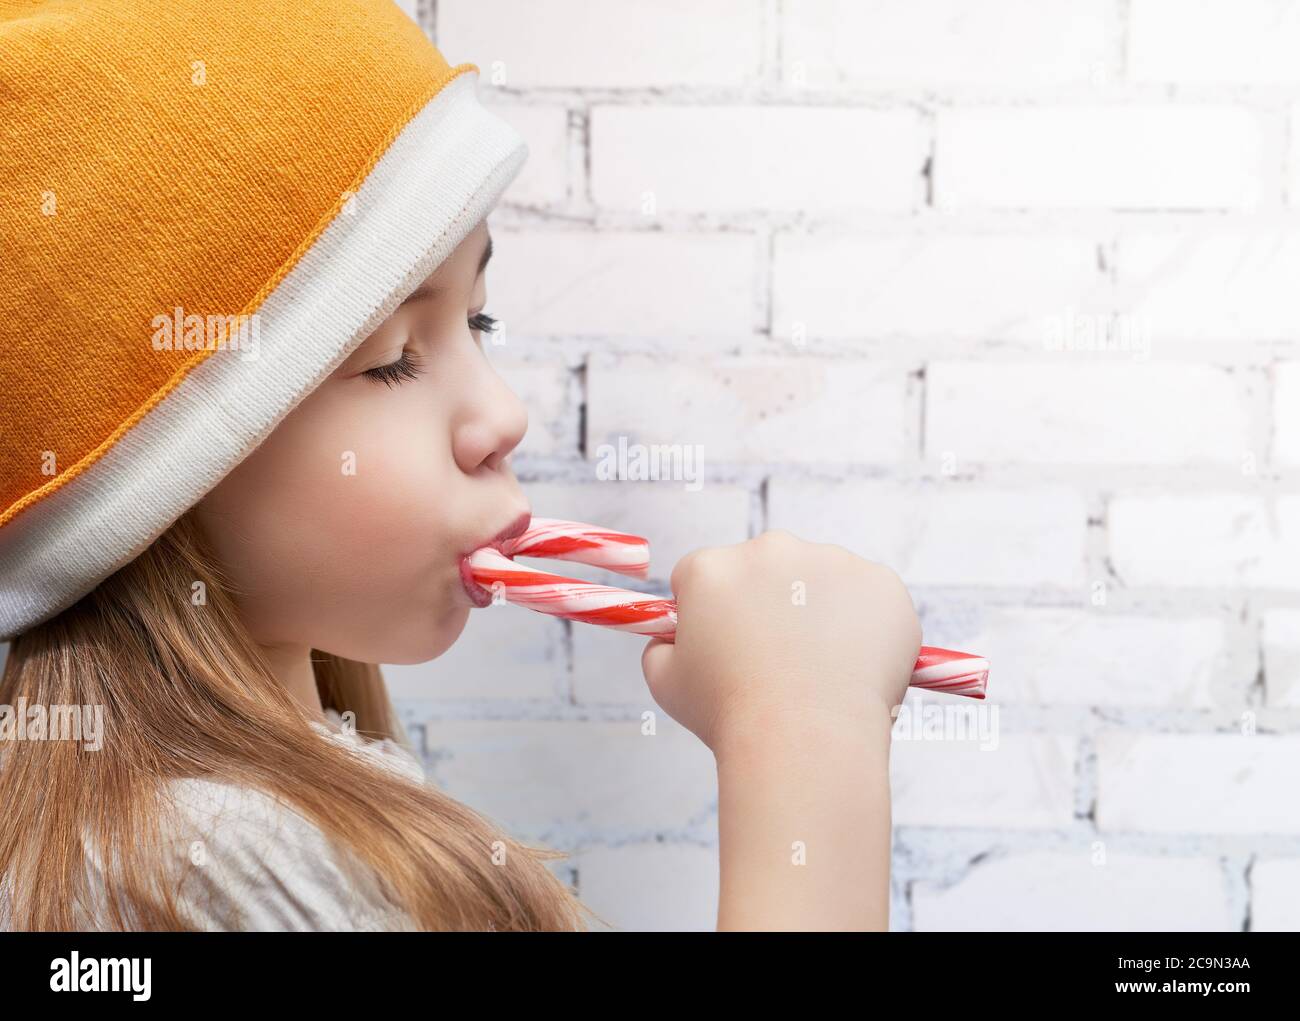 little girl eats a candy bar Stock Photo